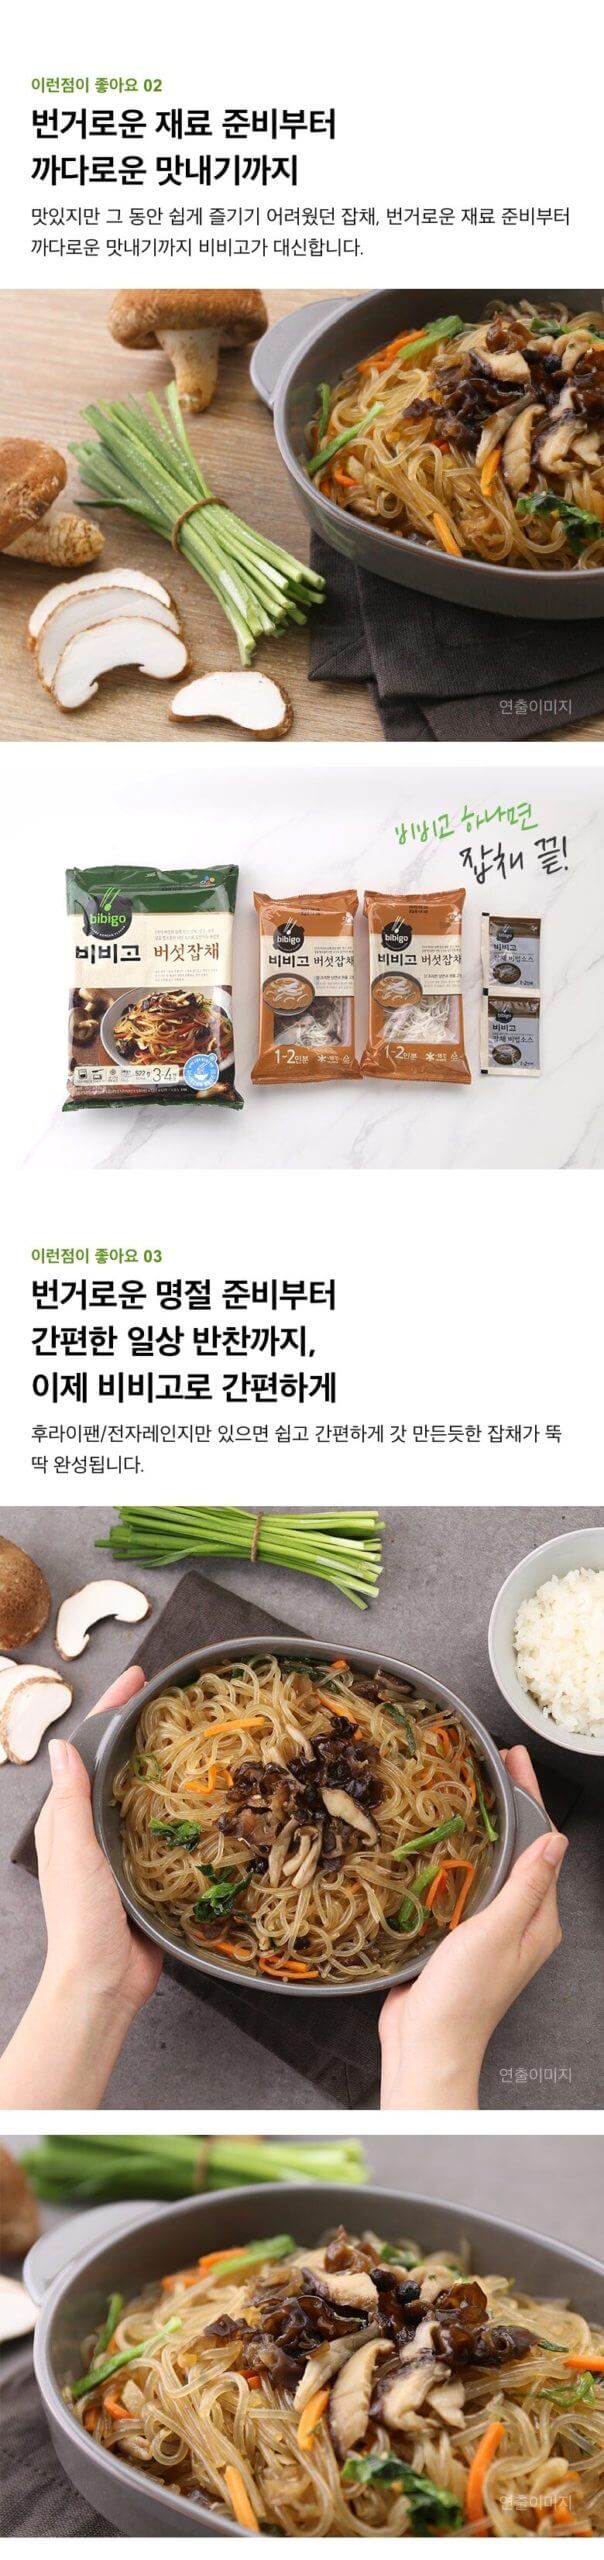 韓國食品-[CJ] Bibigo Mushroom Japchae 522g